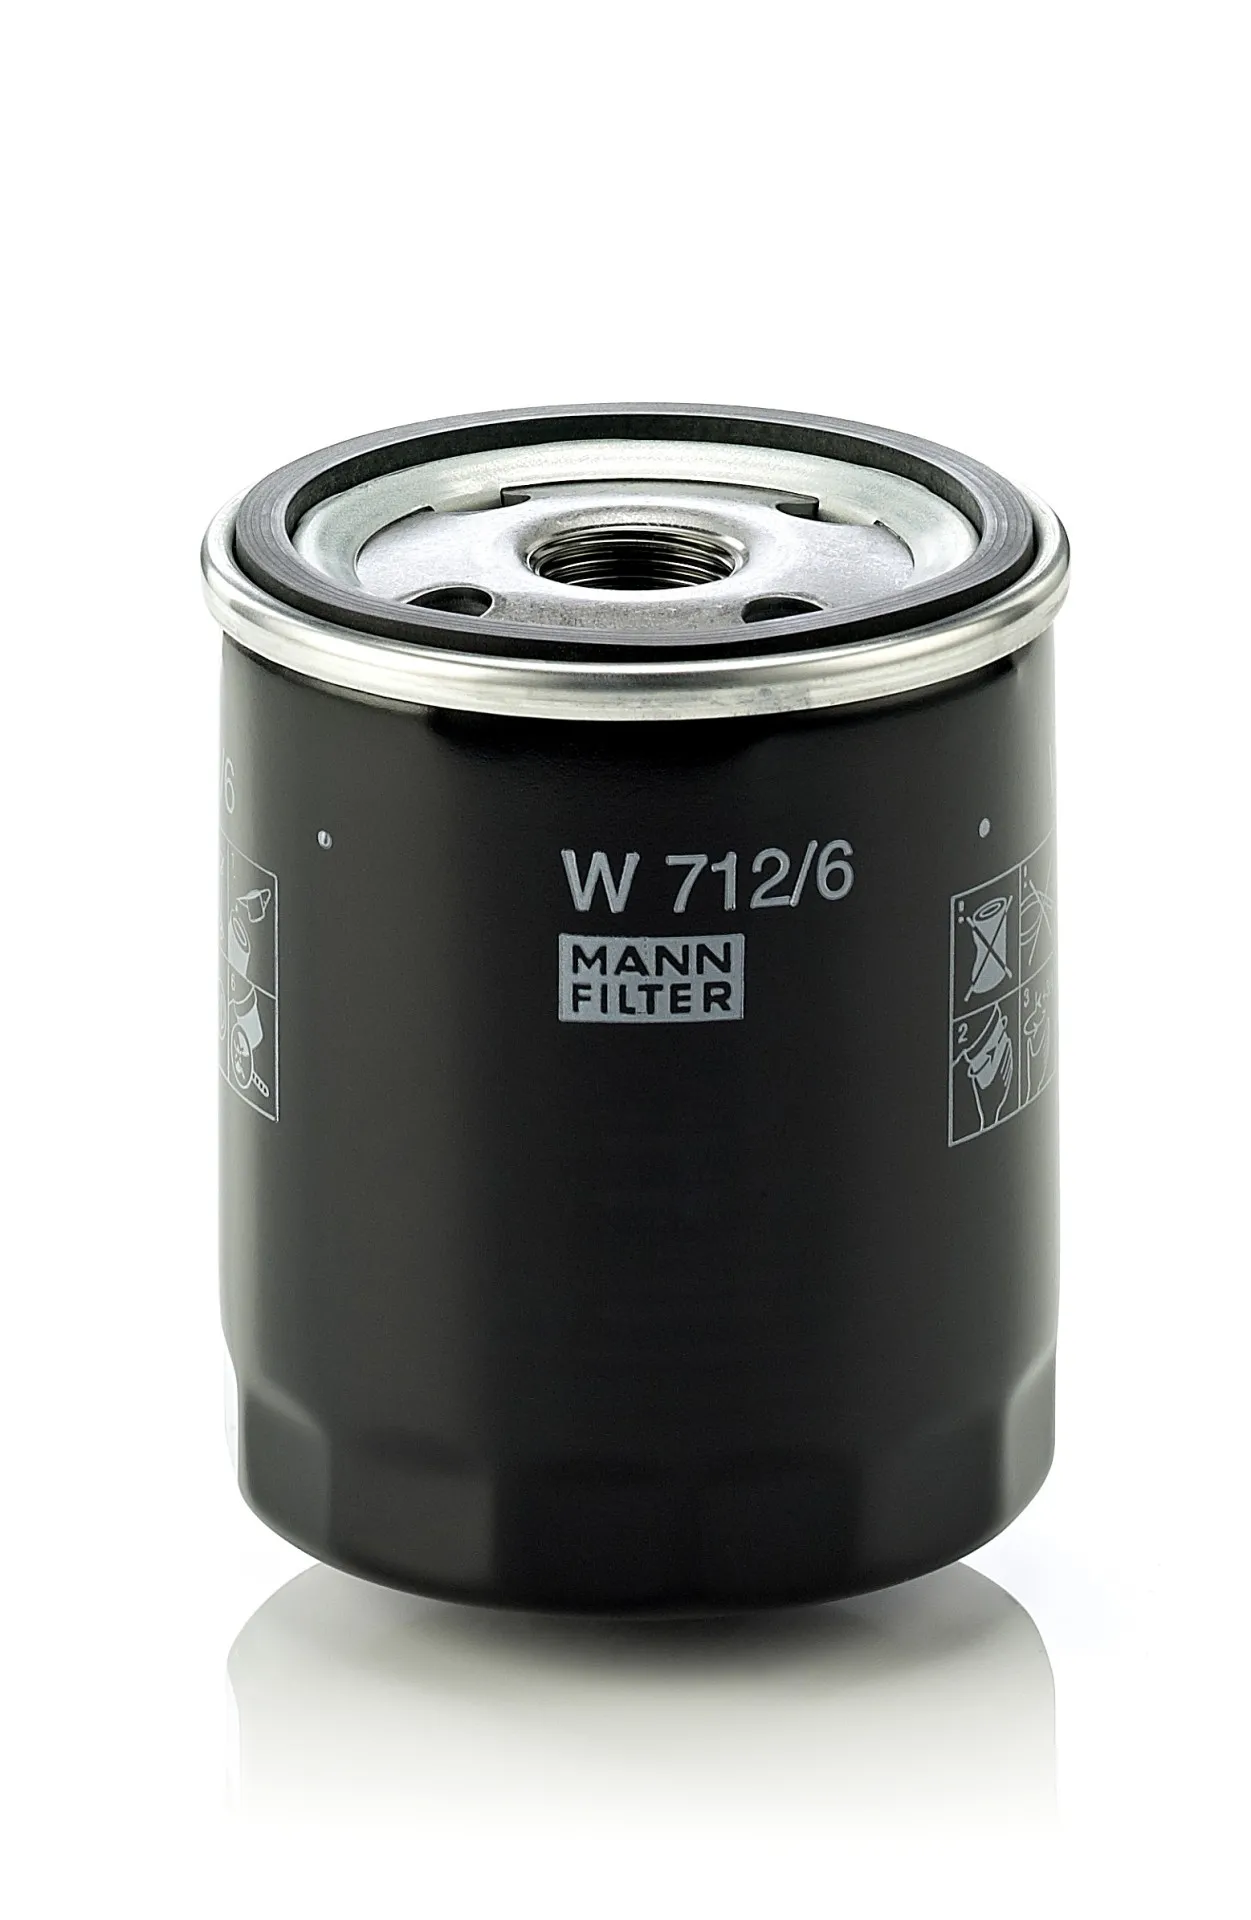 Mann Filter Ölfilter Bmw: 5, 3, 1500-2000, 02 W712/6